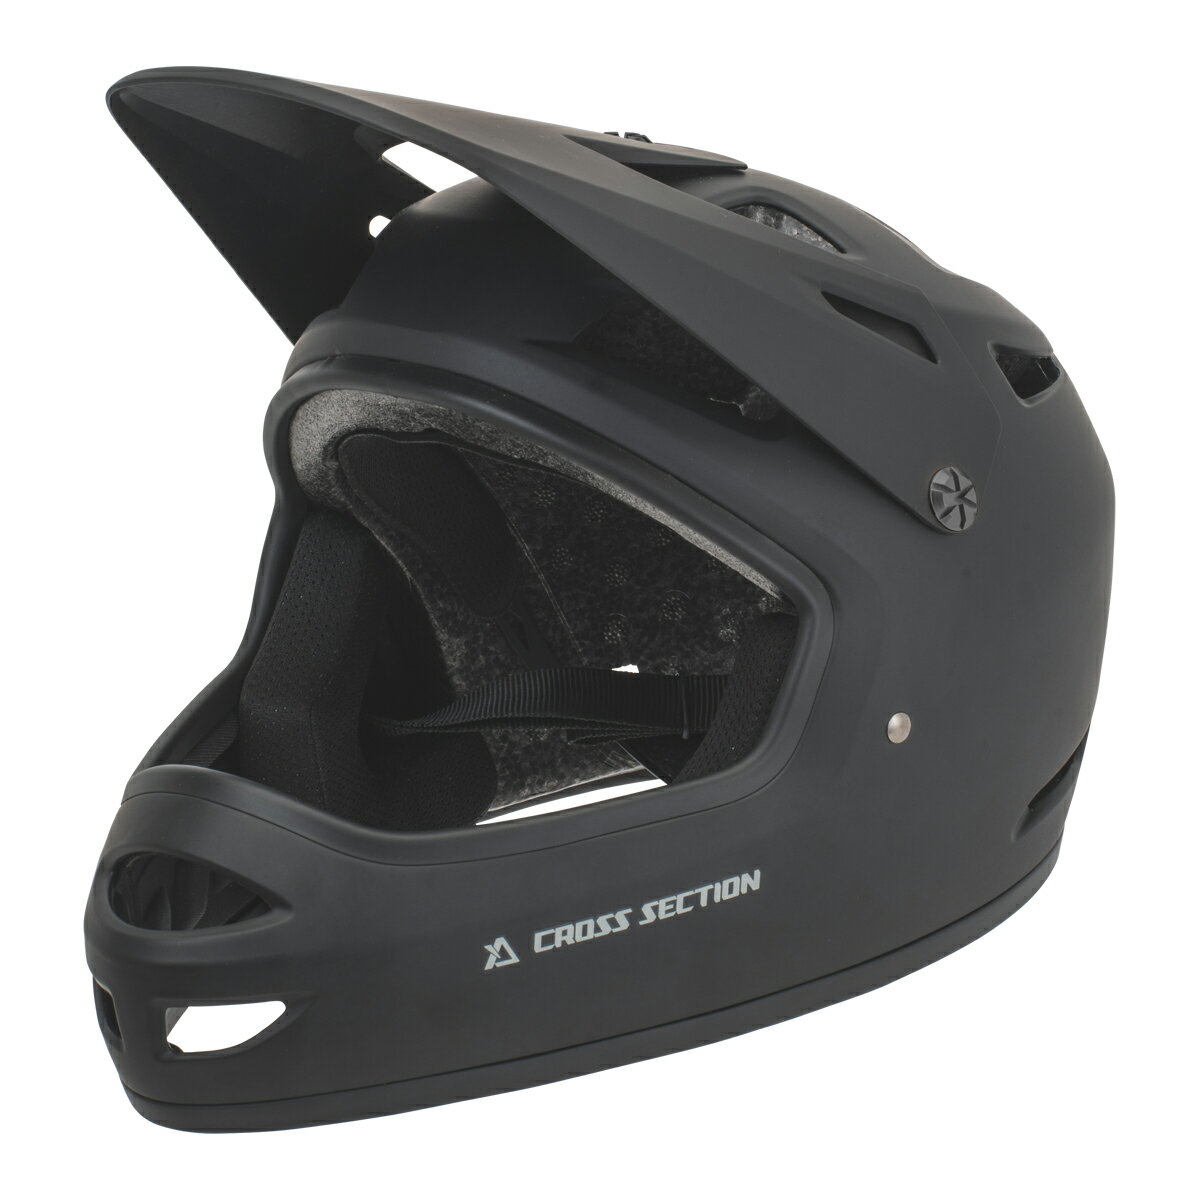 CROSS SECTION キディ フルフェイスヘルメット マットブラック (48-58cm) XS16-5001